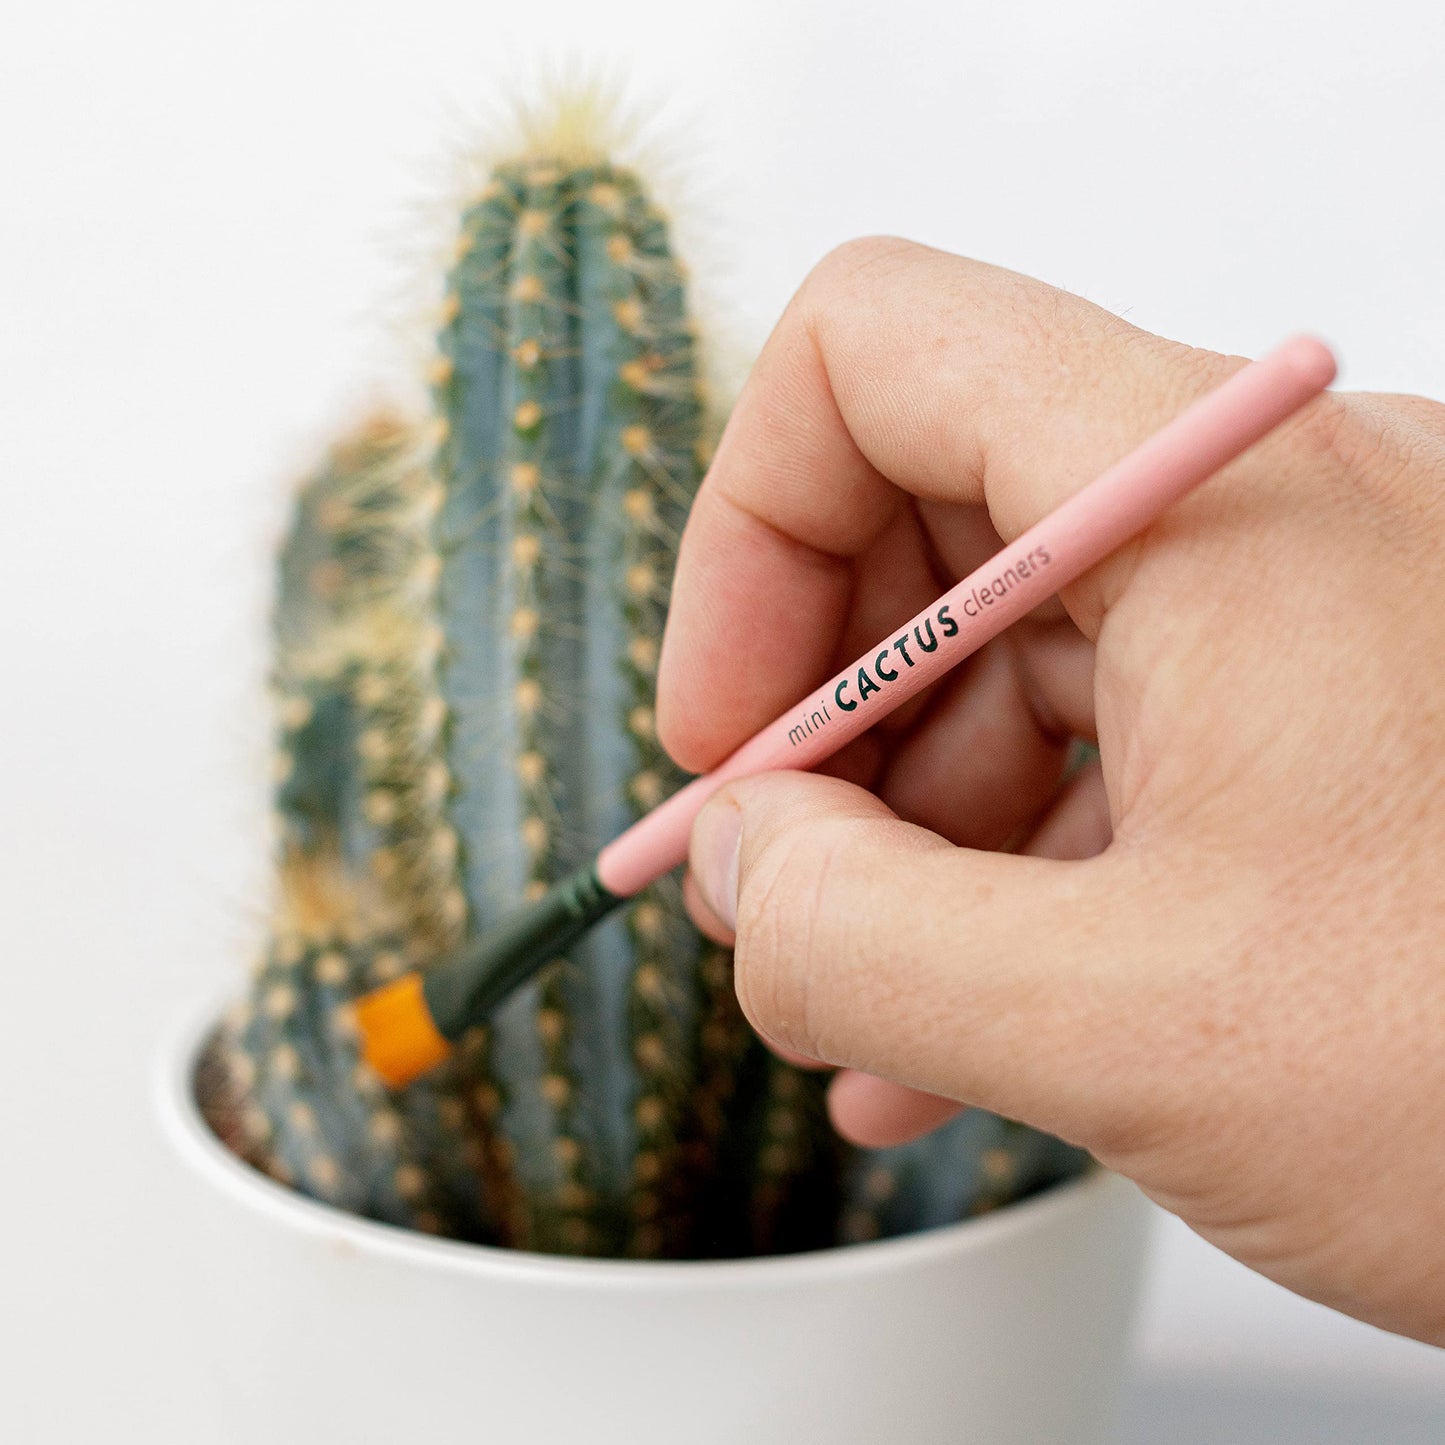 Mini Cactus Brush Set